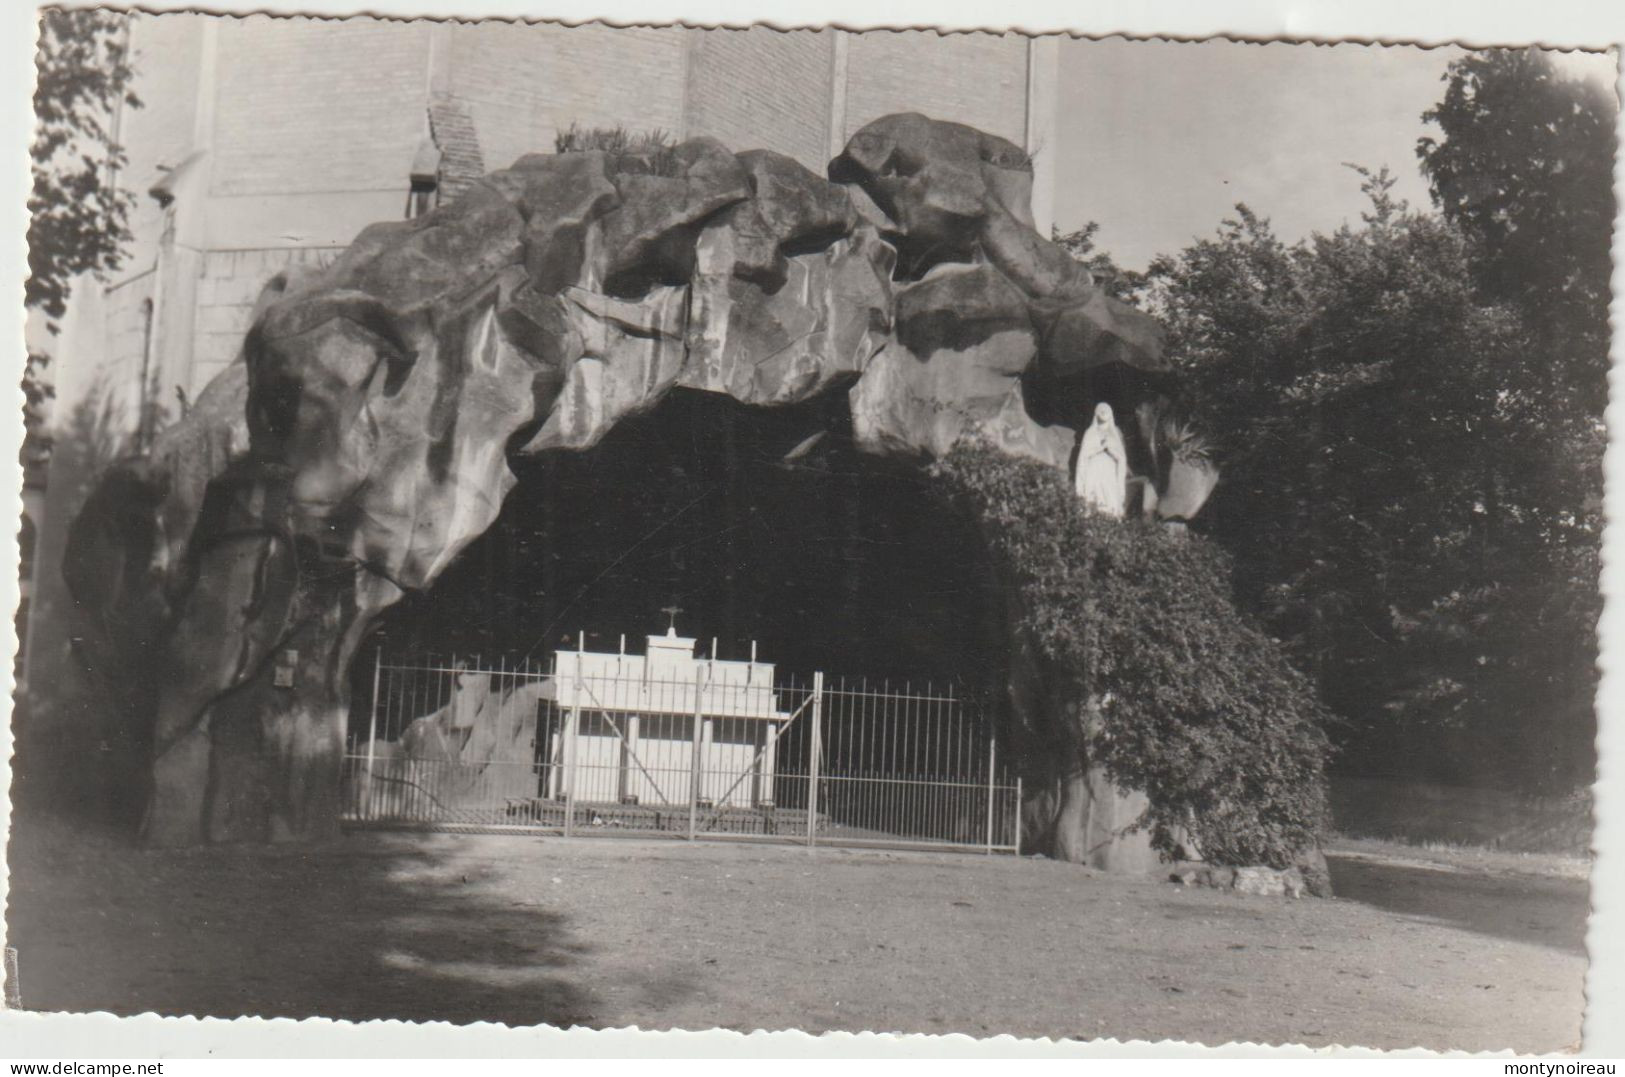 Seine  Maritime :  SOTTEVILLE  Lès  Rouen : La  Grotte Notre Dame De  Lourdes  1962 - Sotteville Les Rouen